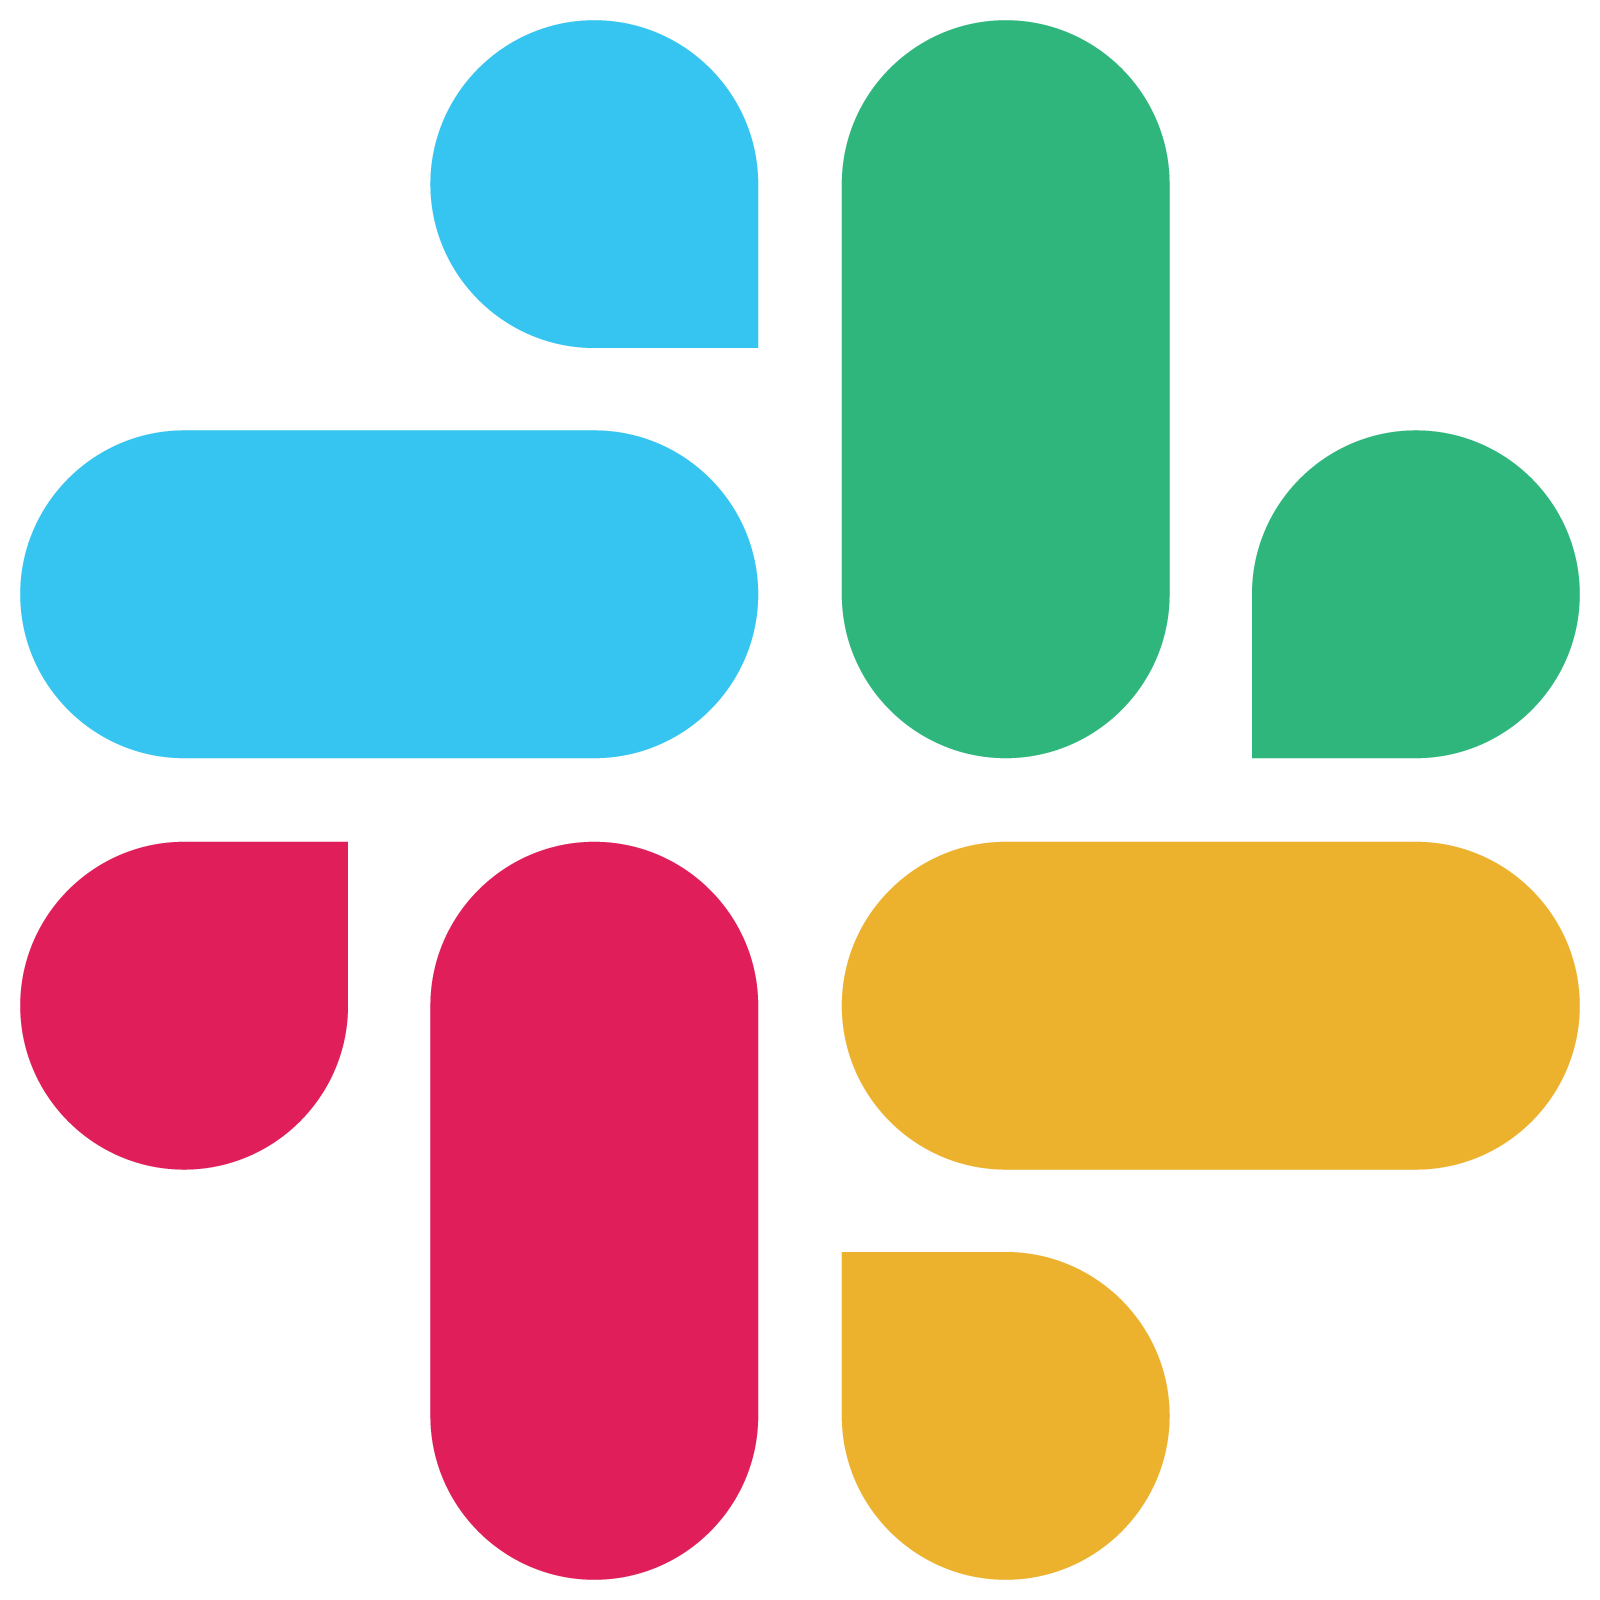 Logo of Slack - team communication platform